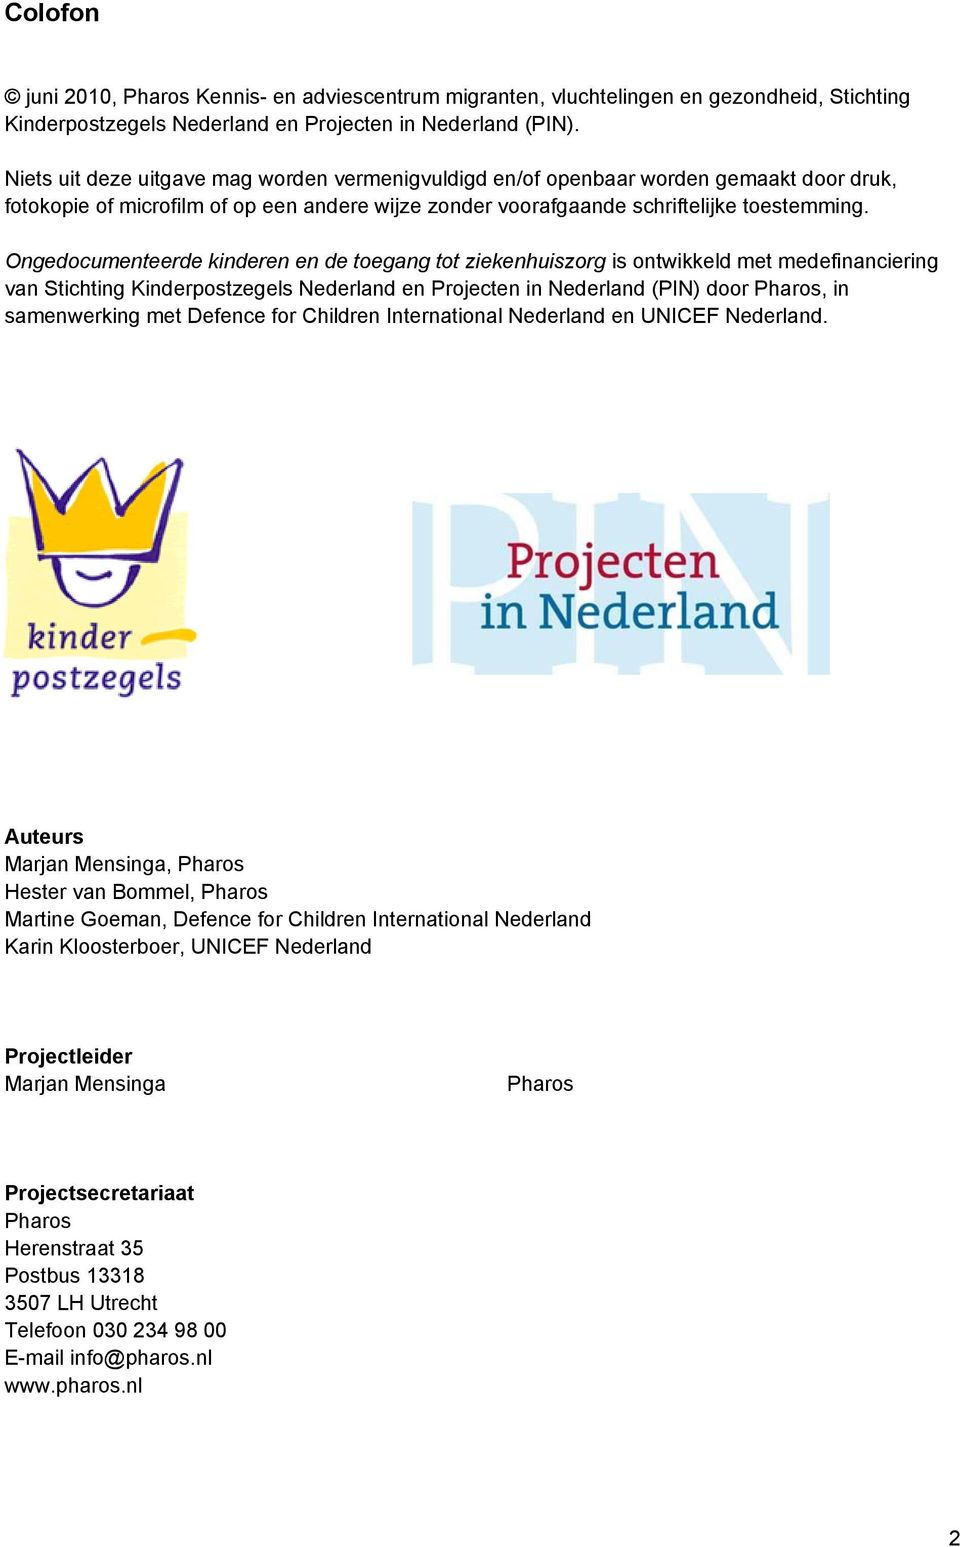 Ongedocumenteerde kinderen en de toegang tot ziekenhuiszorg is ontwikkeld met medefinanciering van Stichting Kinderpostzegels Nederland en Projecten in Nederland (PIN) door Pharos, in samenwerking